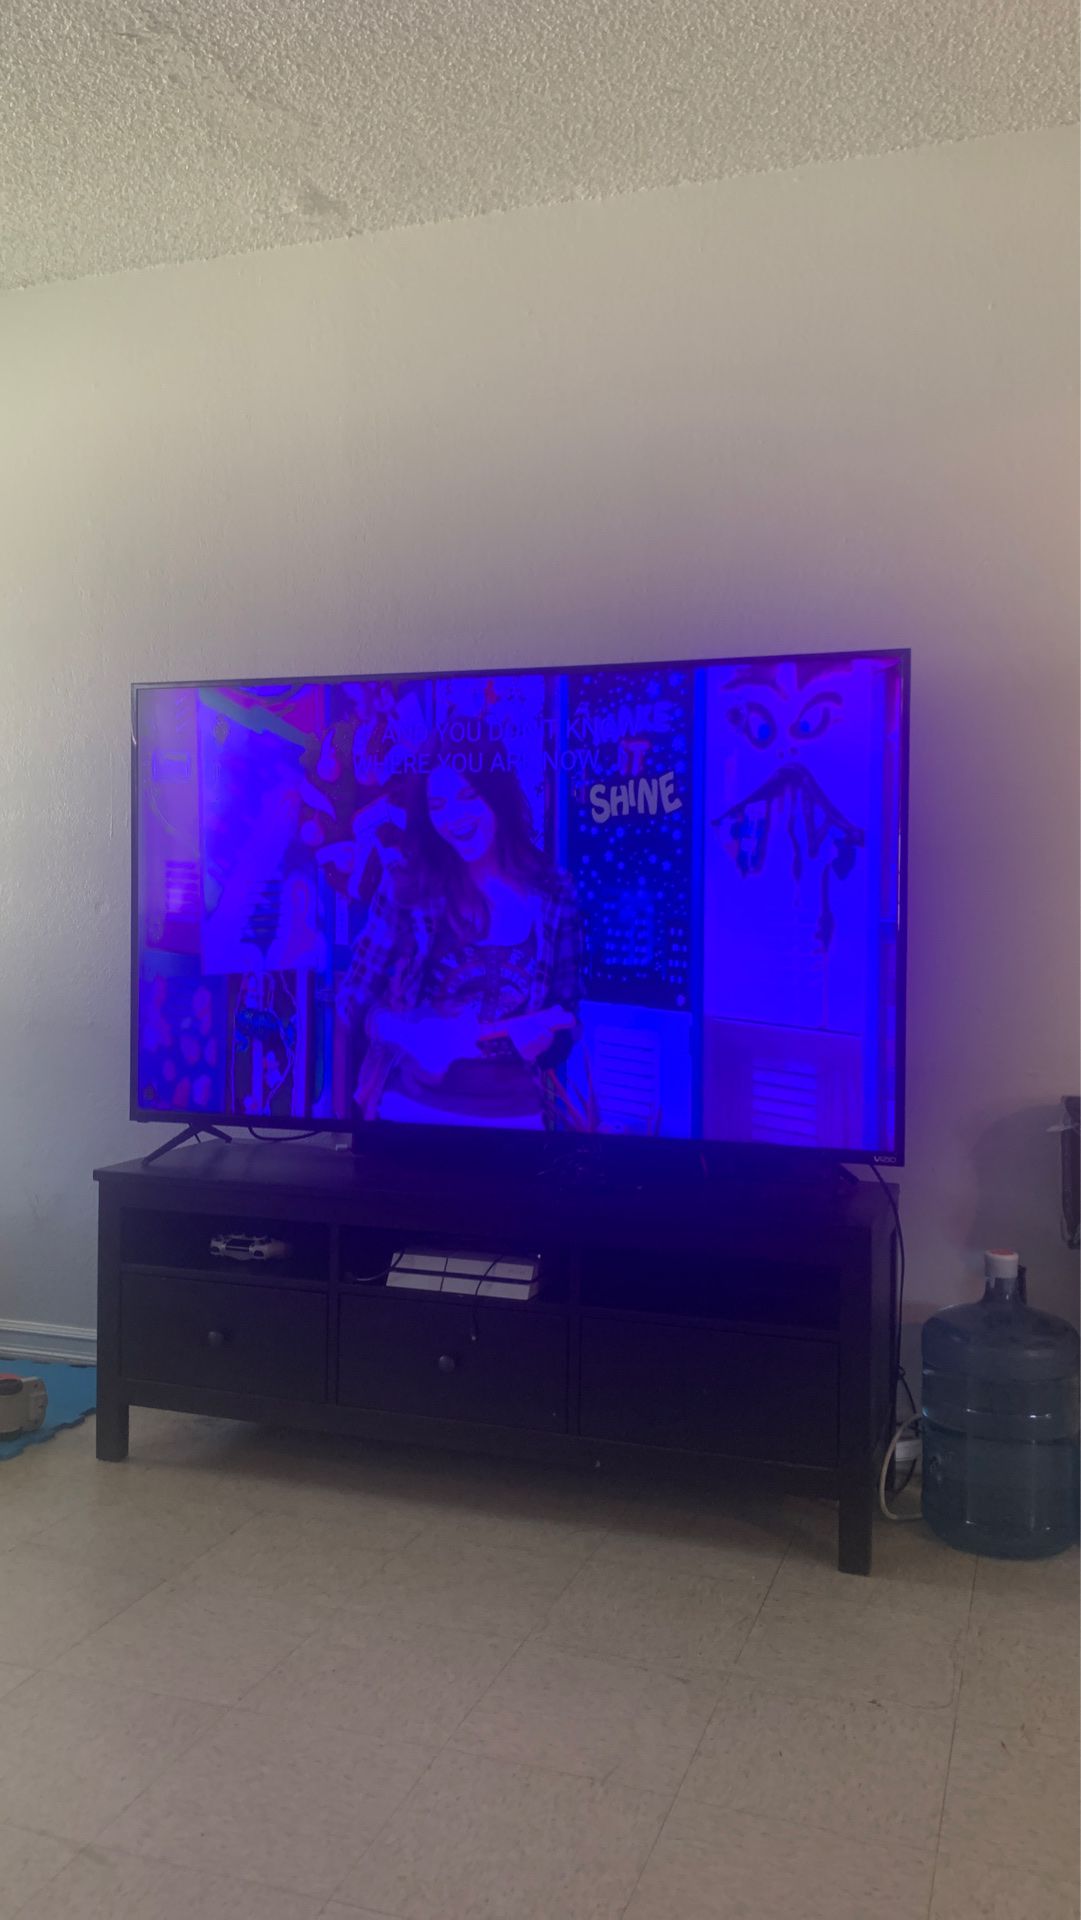 Vizio 70 inch tv